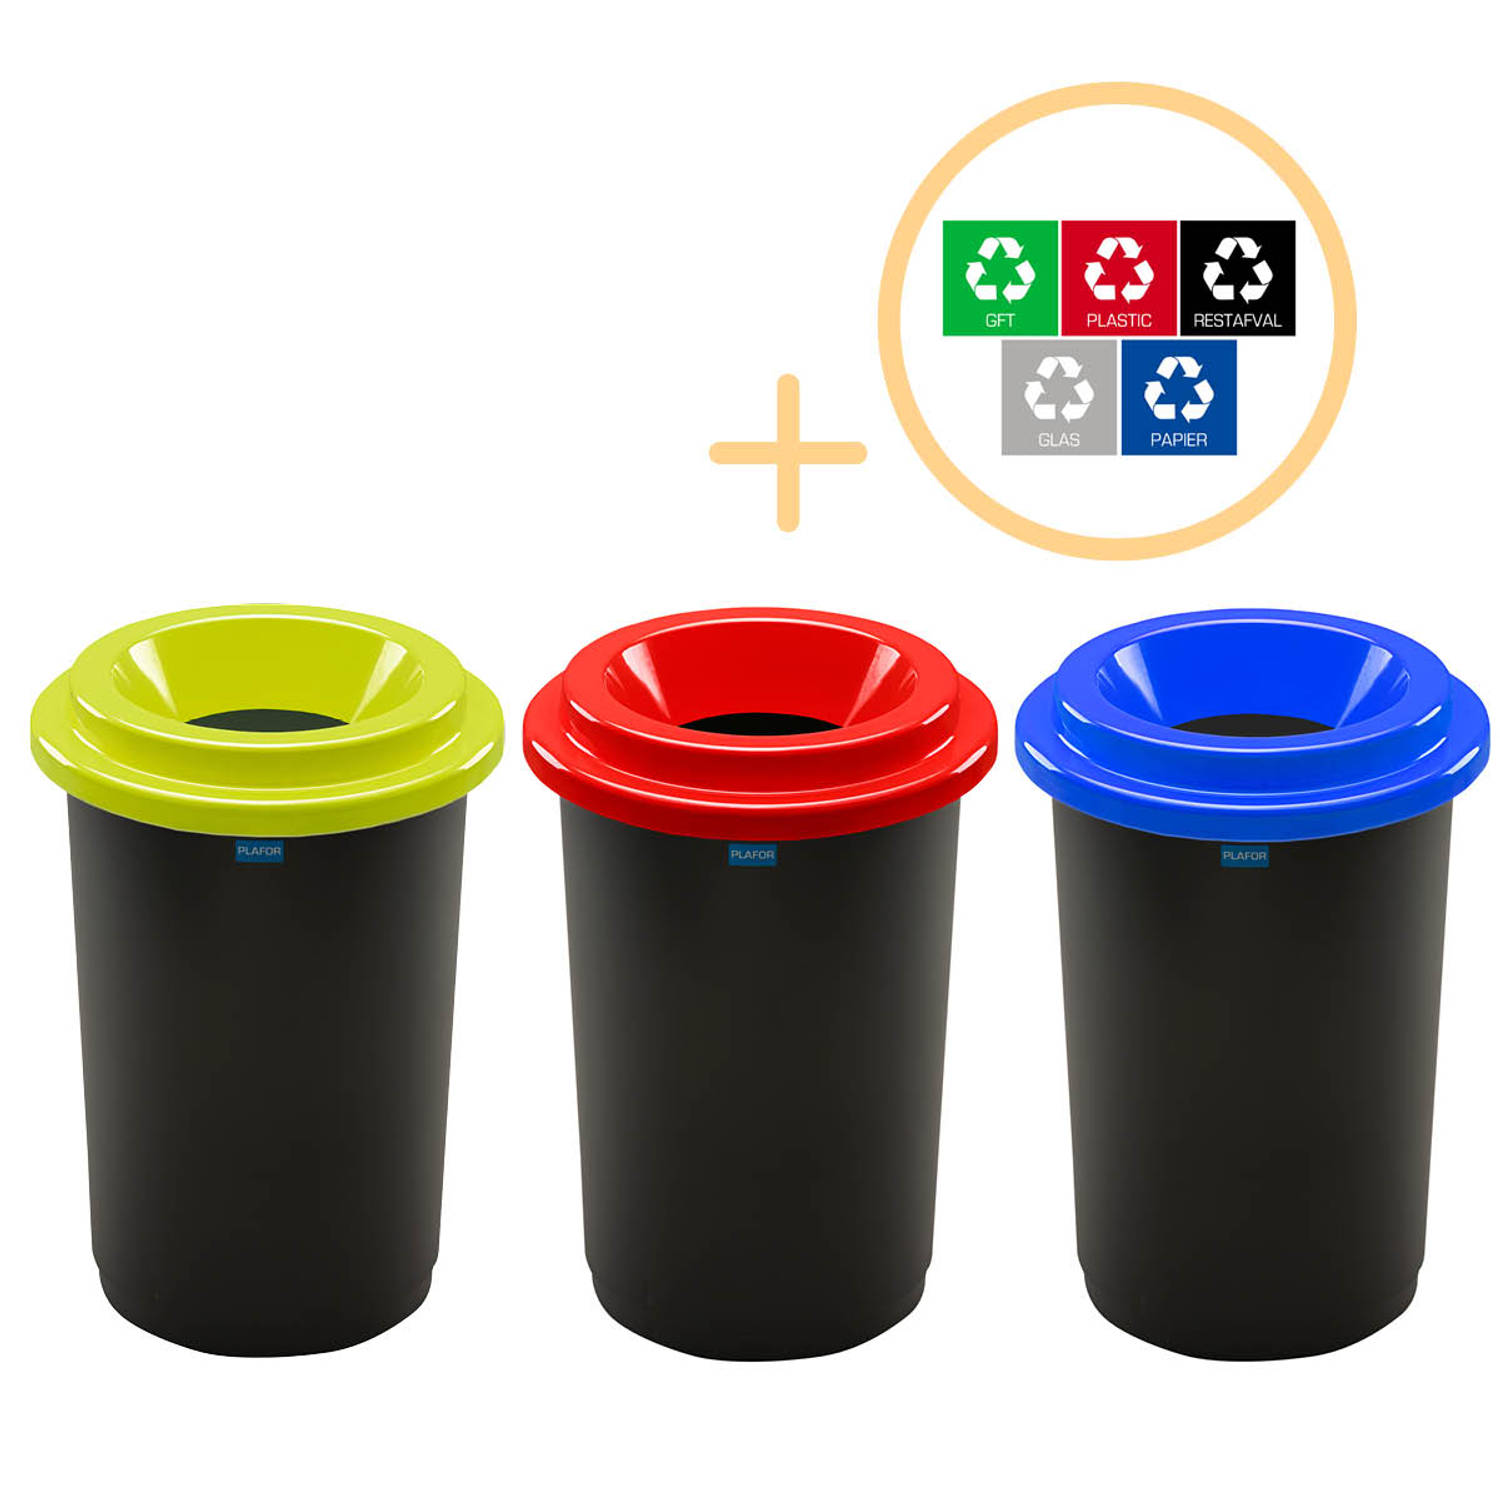 Plafor Eco Bin, Prullenbak voor afvalscheiding - 50L – Set van 3, Blauw/Groen/Rood - Inclusief 5-delige Stickerset - Afvalbak voor gemakkelijk Afval Scheiden en Recycling - Afvalem